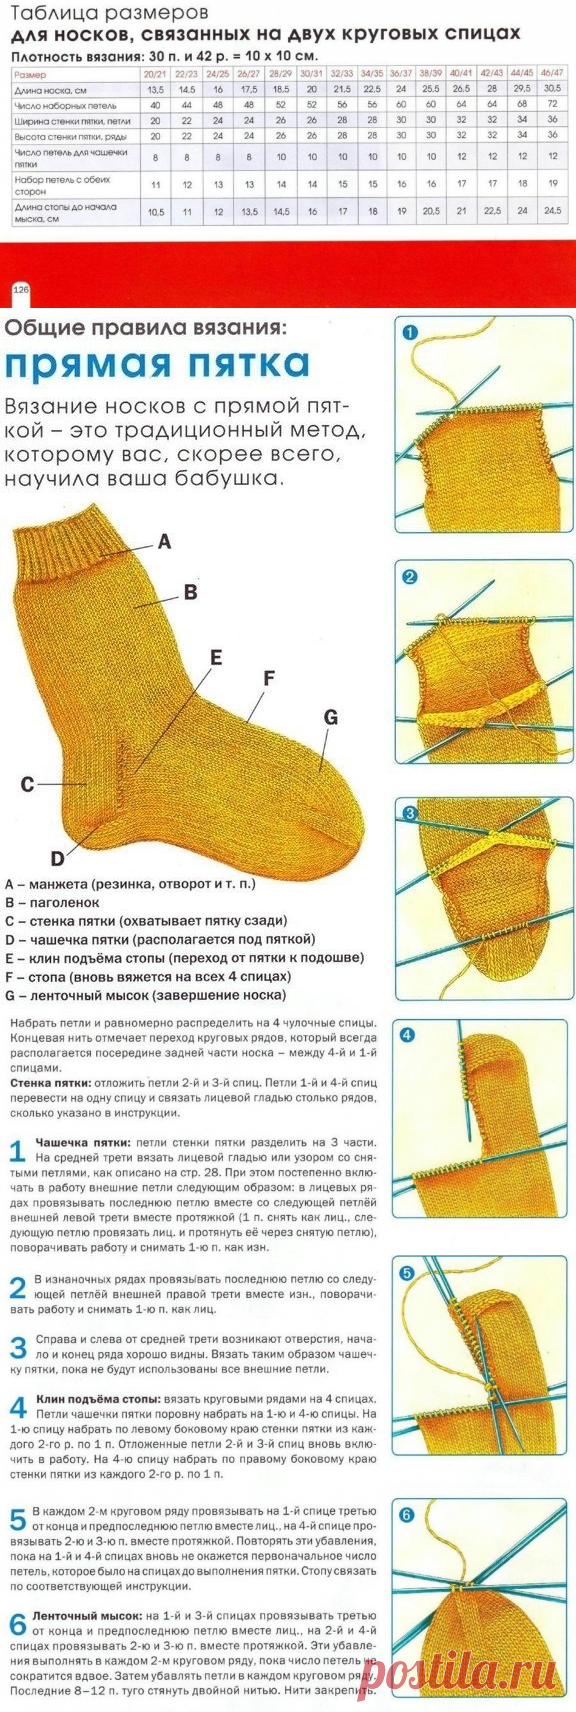 Как правильно вязать пятку спицами носка пошагово